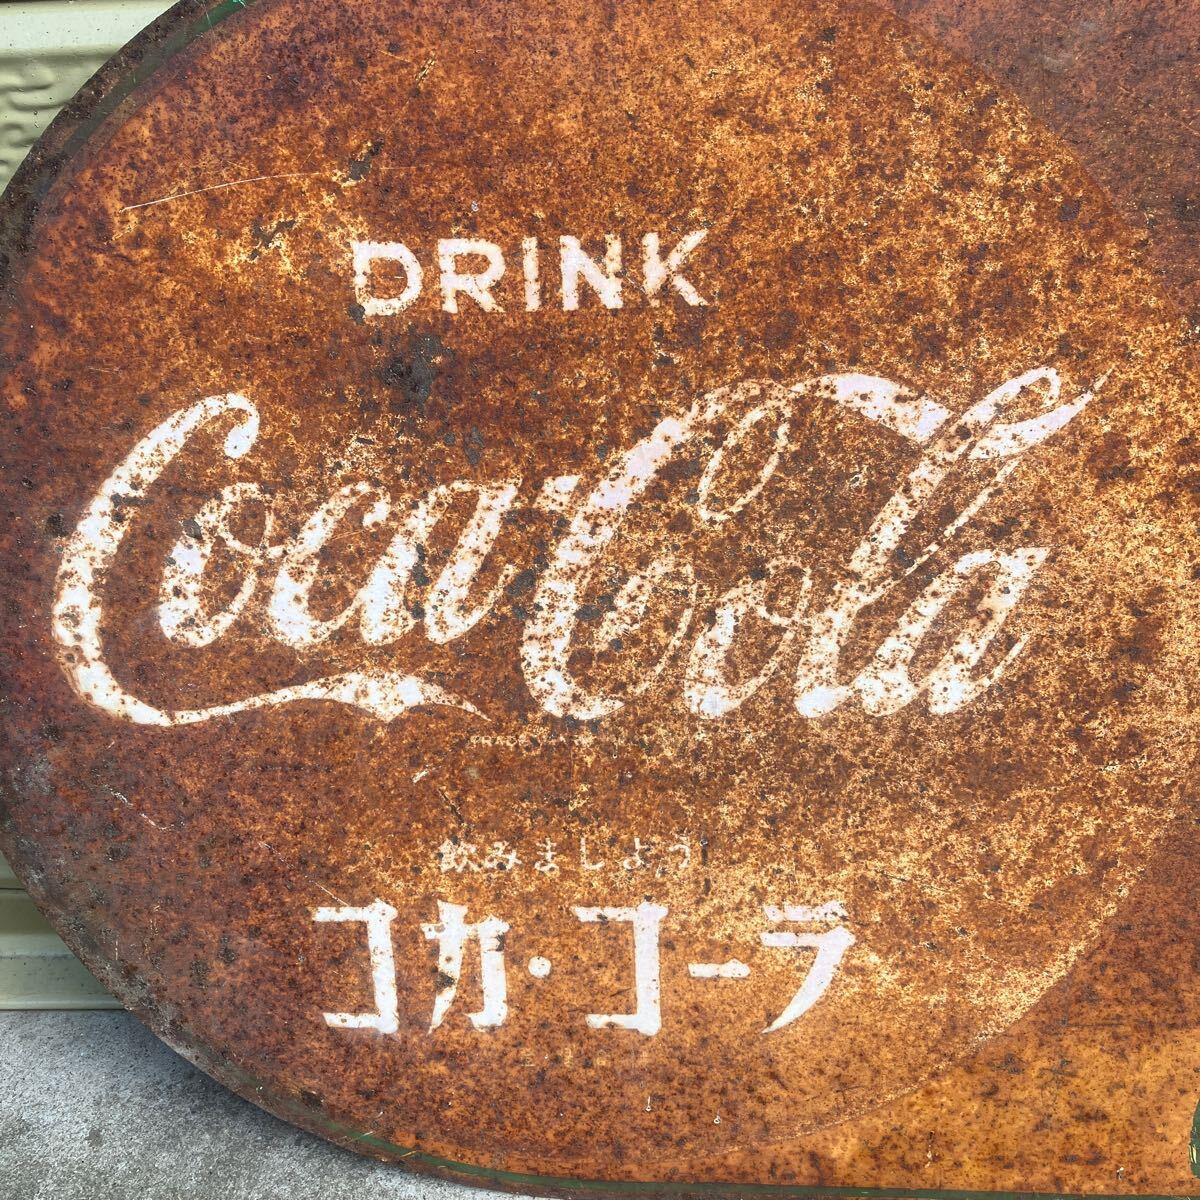 Coca-Cola コカコーラ DRINK 飲みましょう コカコーラ ホーロー 看板 レトロ アンティーク の画像5